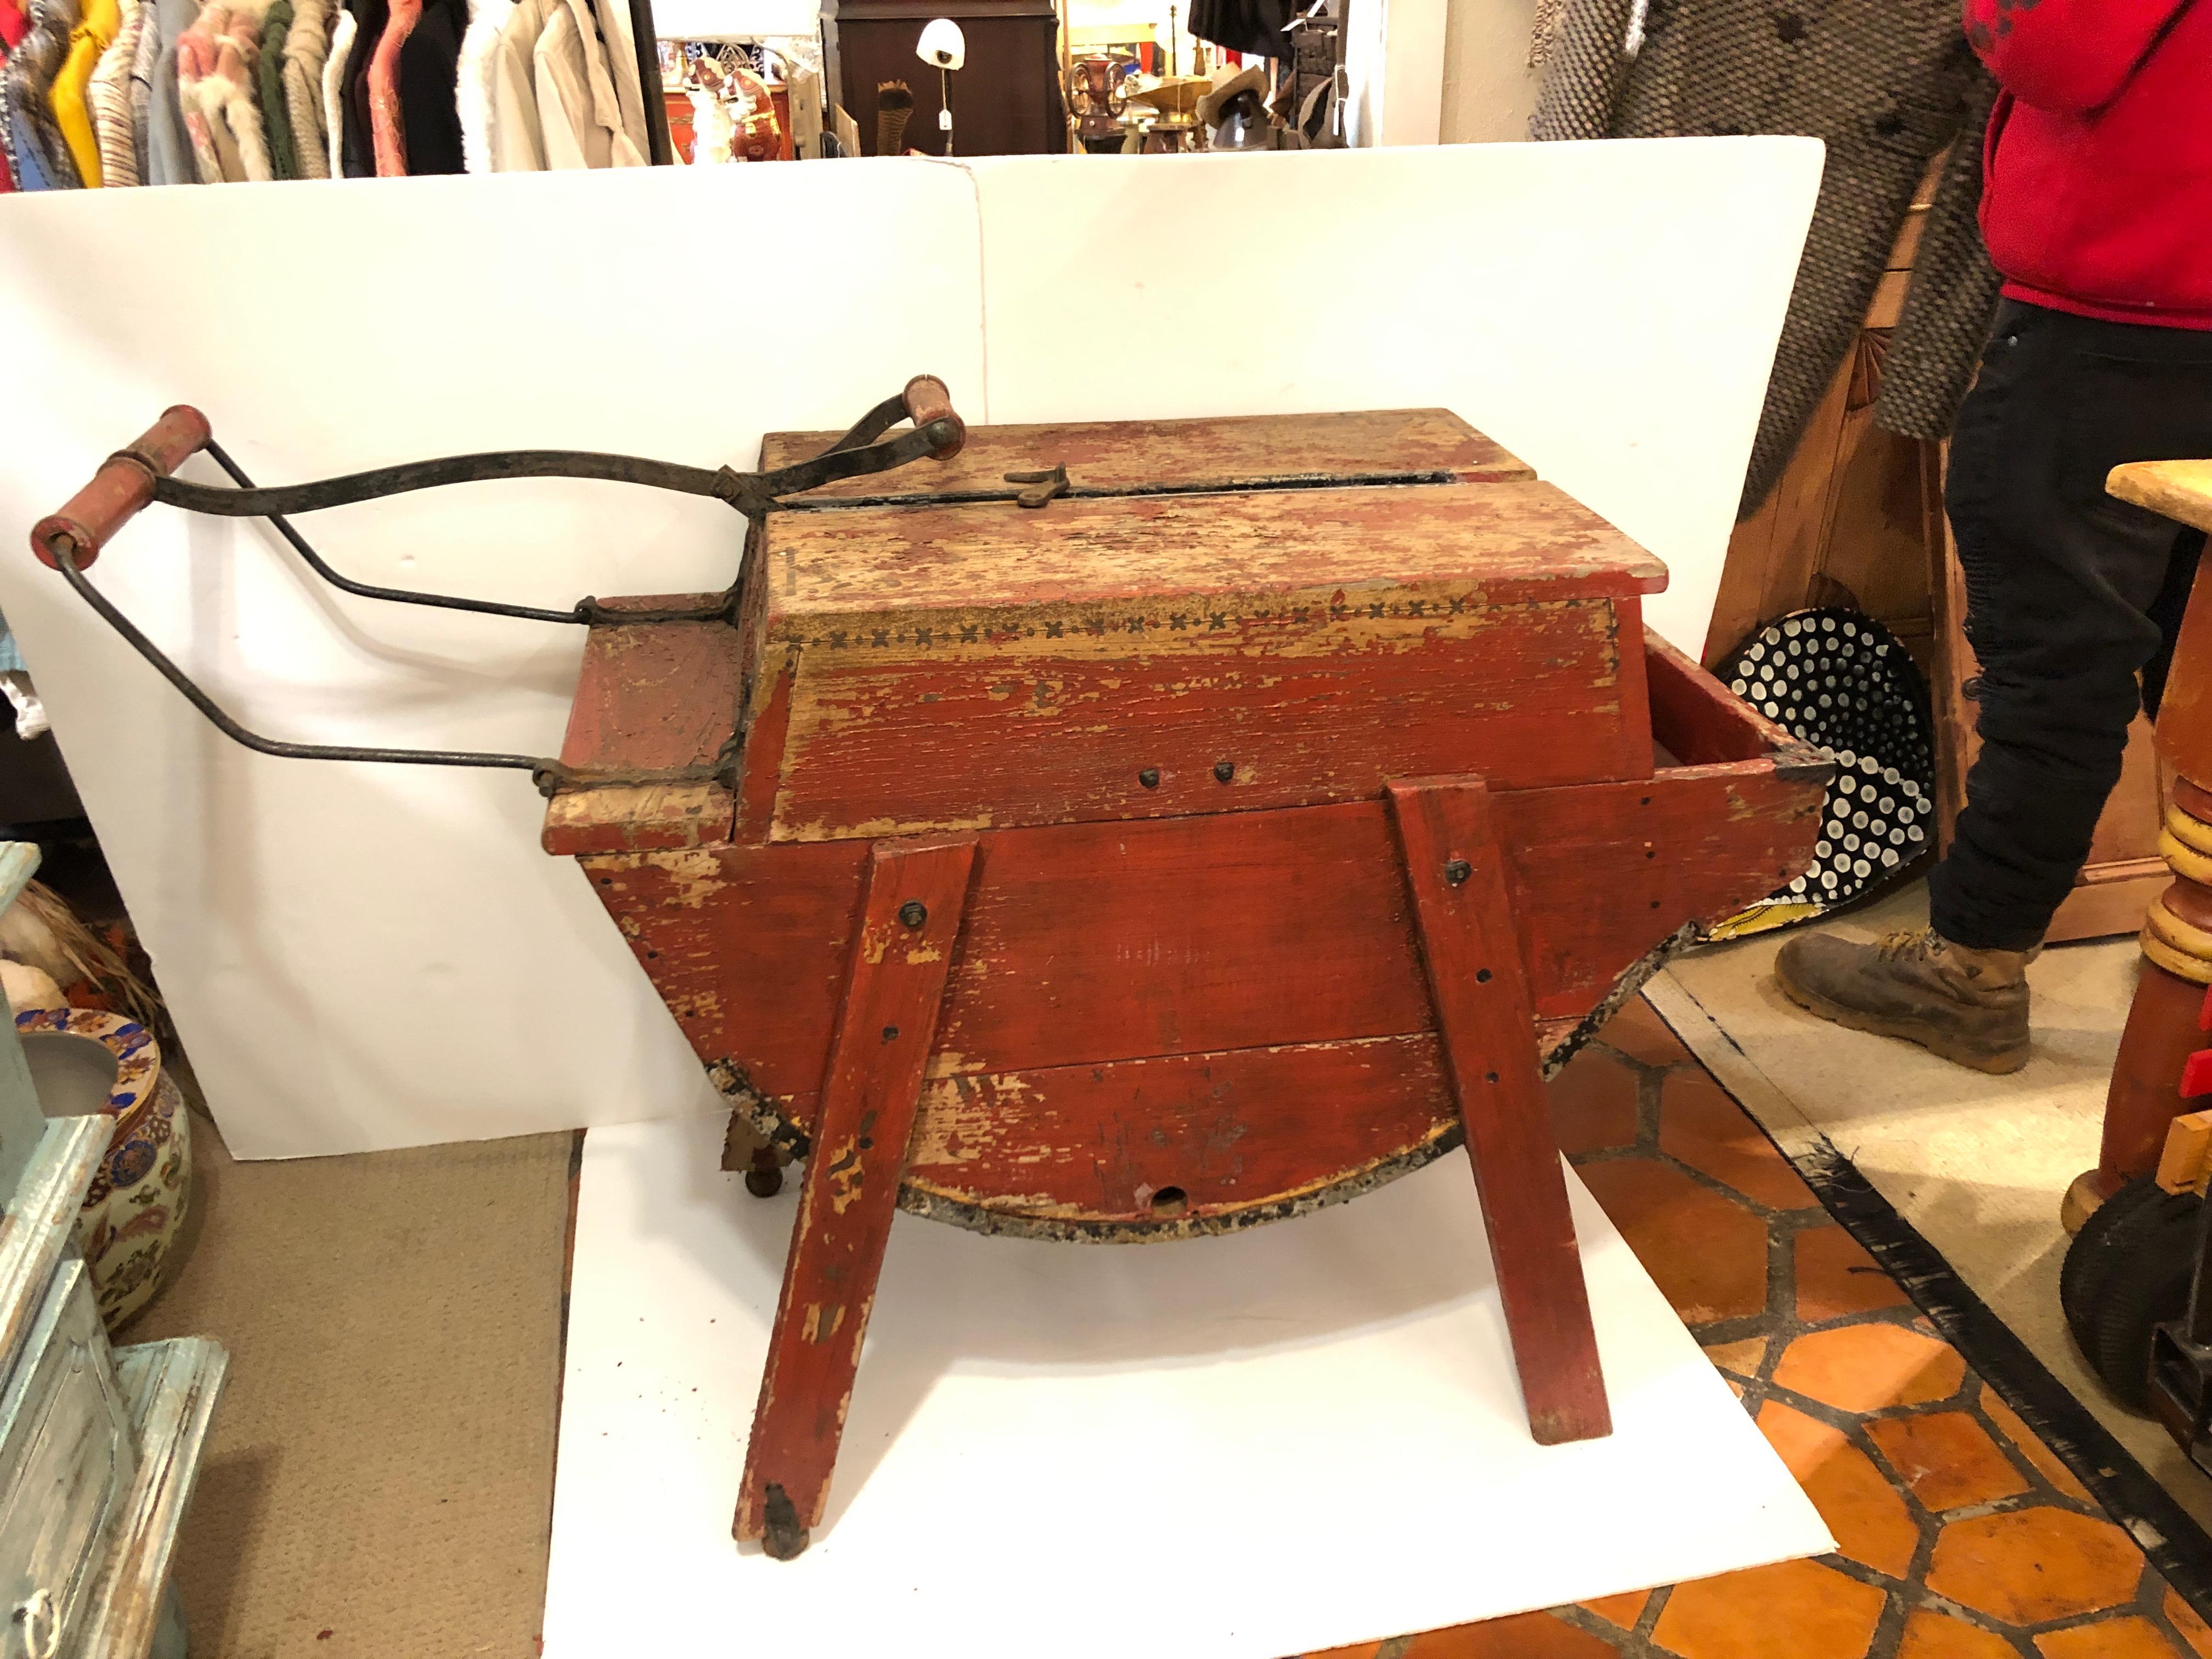 Une fabuleuse machine à laver vintage en bois rouge patiné que quelqu'un avec de l'imagination peut utiliser comme table d'appoint ou objet trouvé qui ajoute de la chaleur et de la curiosité à un espace.
La poignée de gauche se soulève et